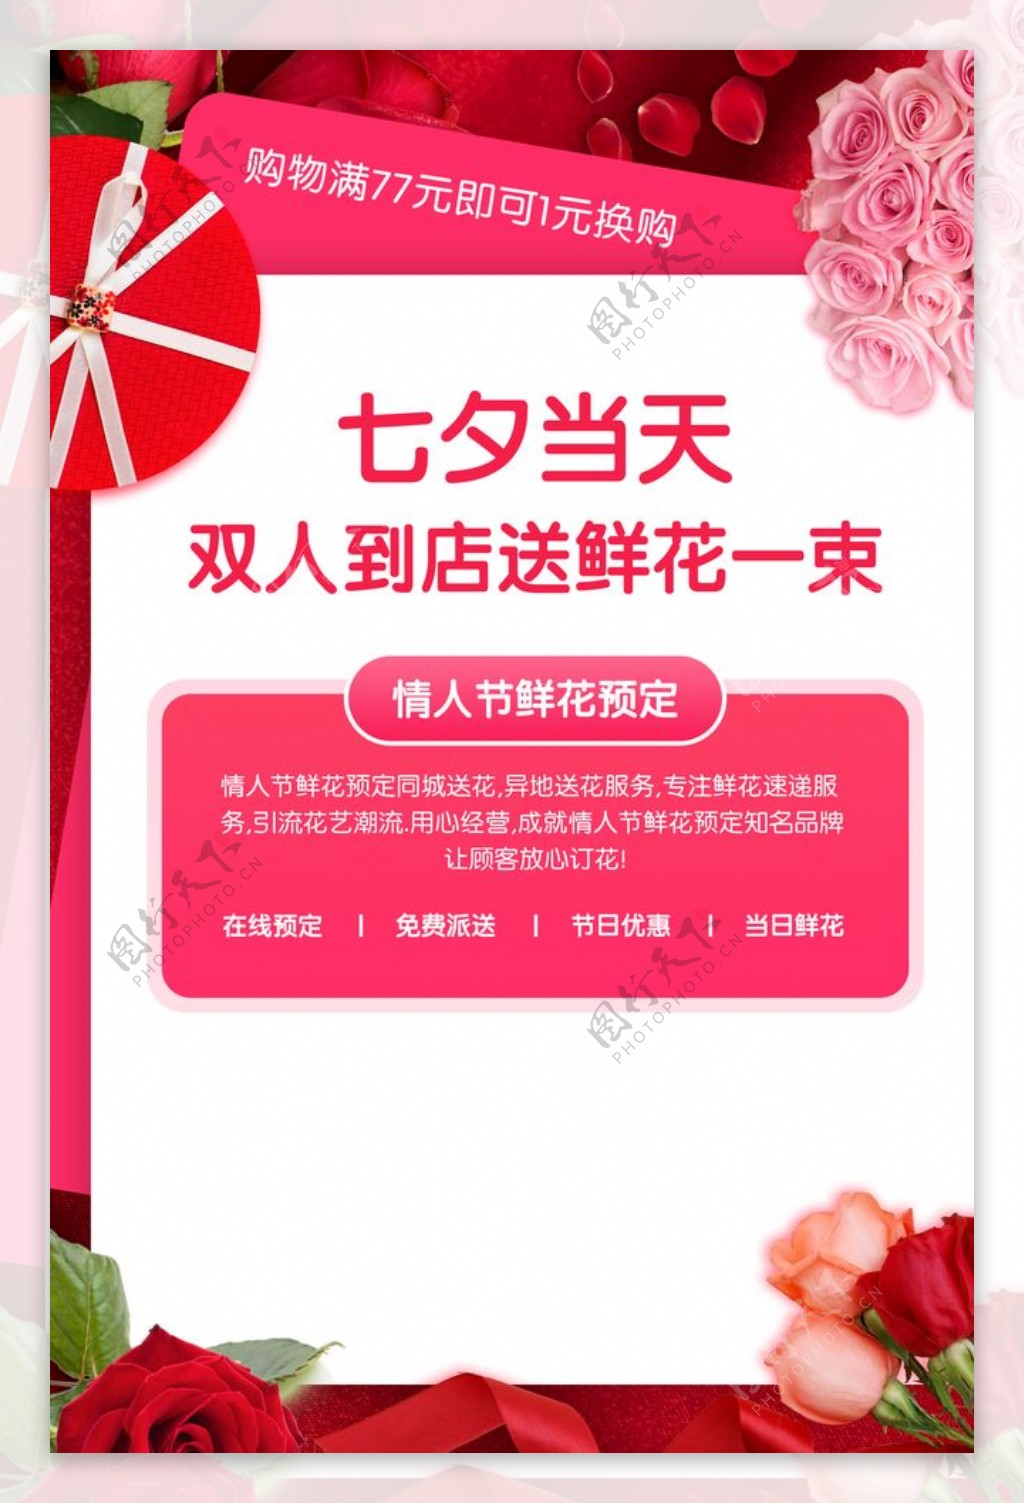 七夕鲜花配送活动海报素材图片